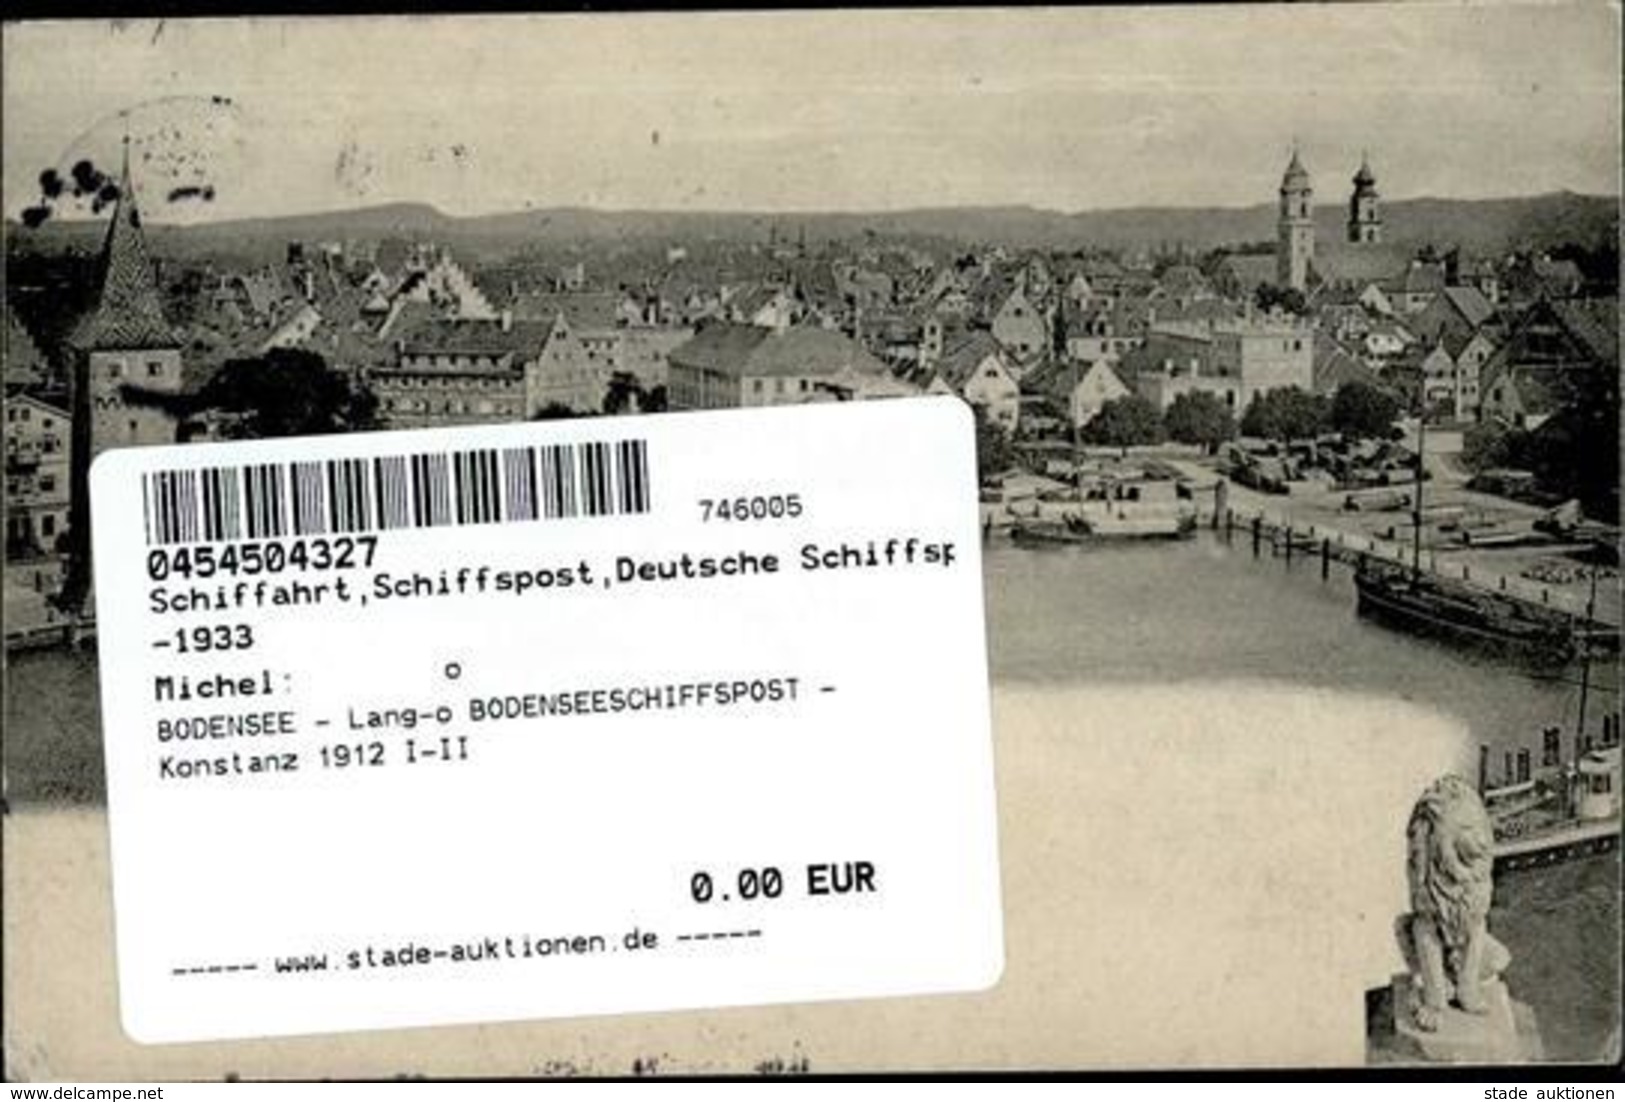 BODENSEE - Lang-o BODENSEESCHIFFSPOST - Konstanz 1912 I-II - Guerra